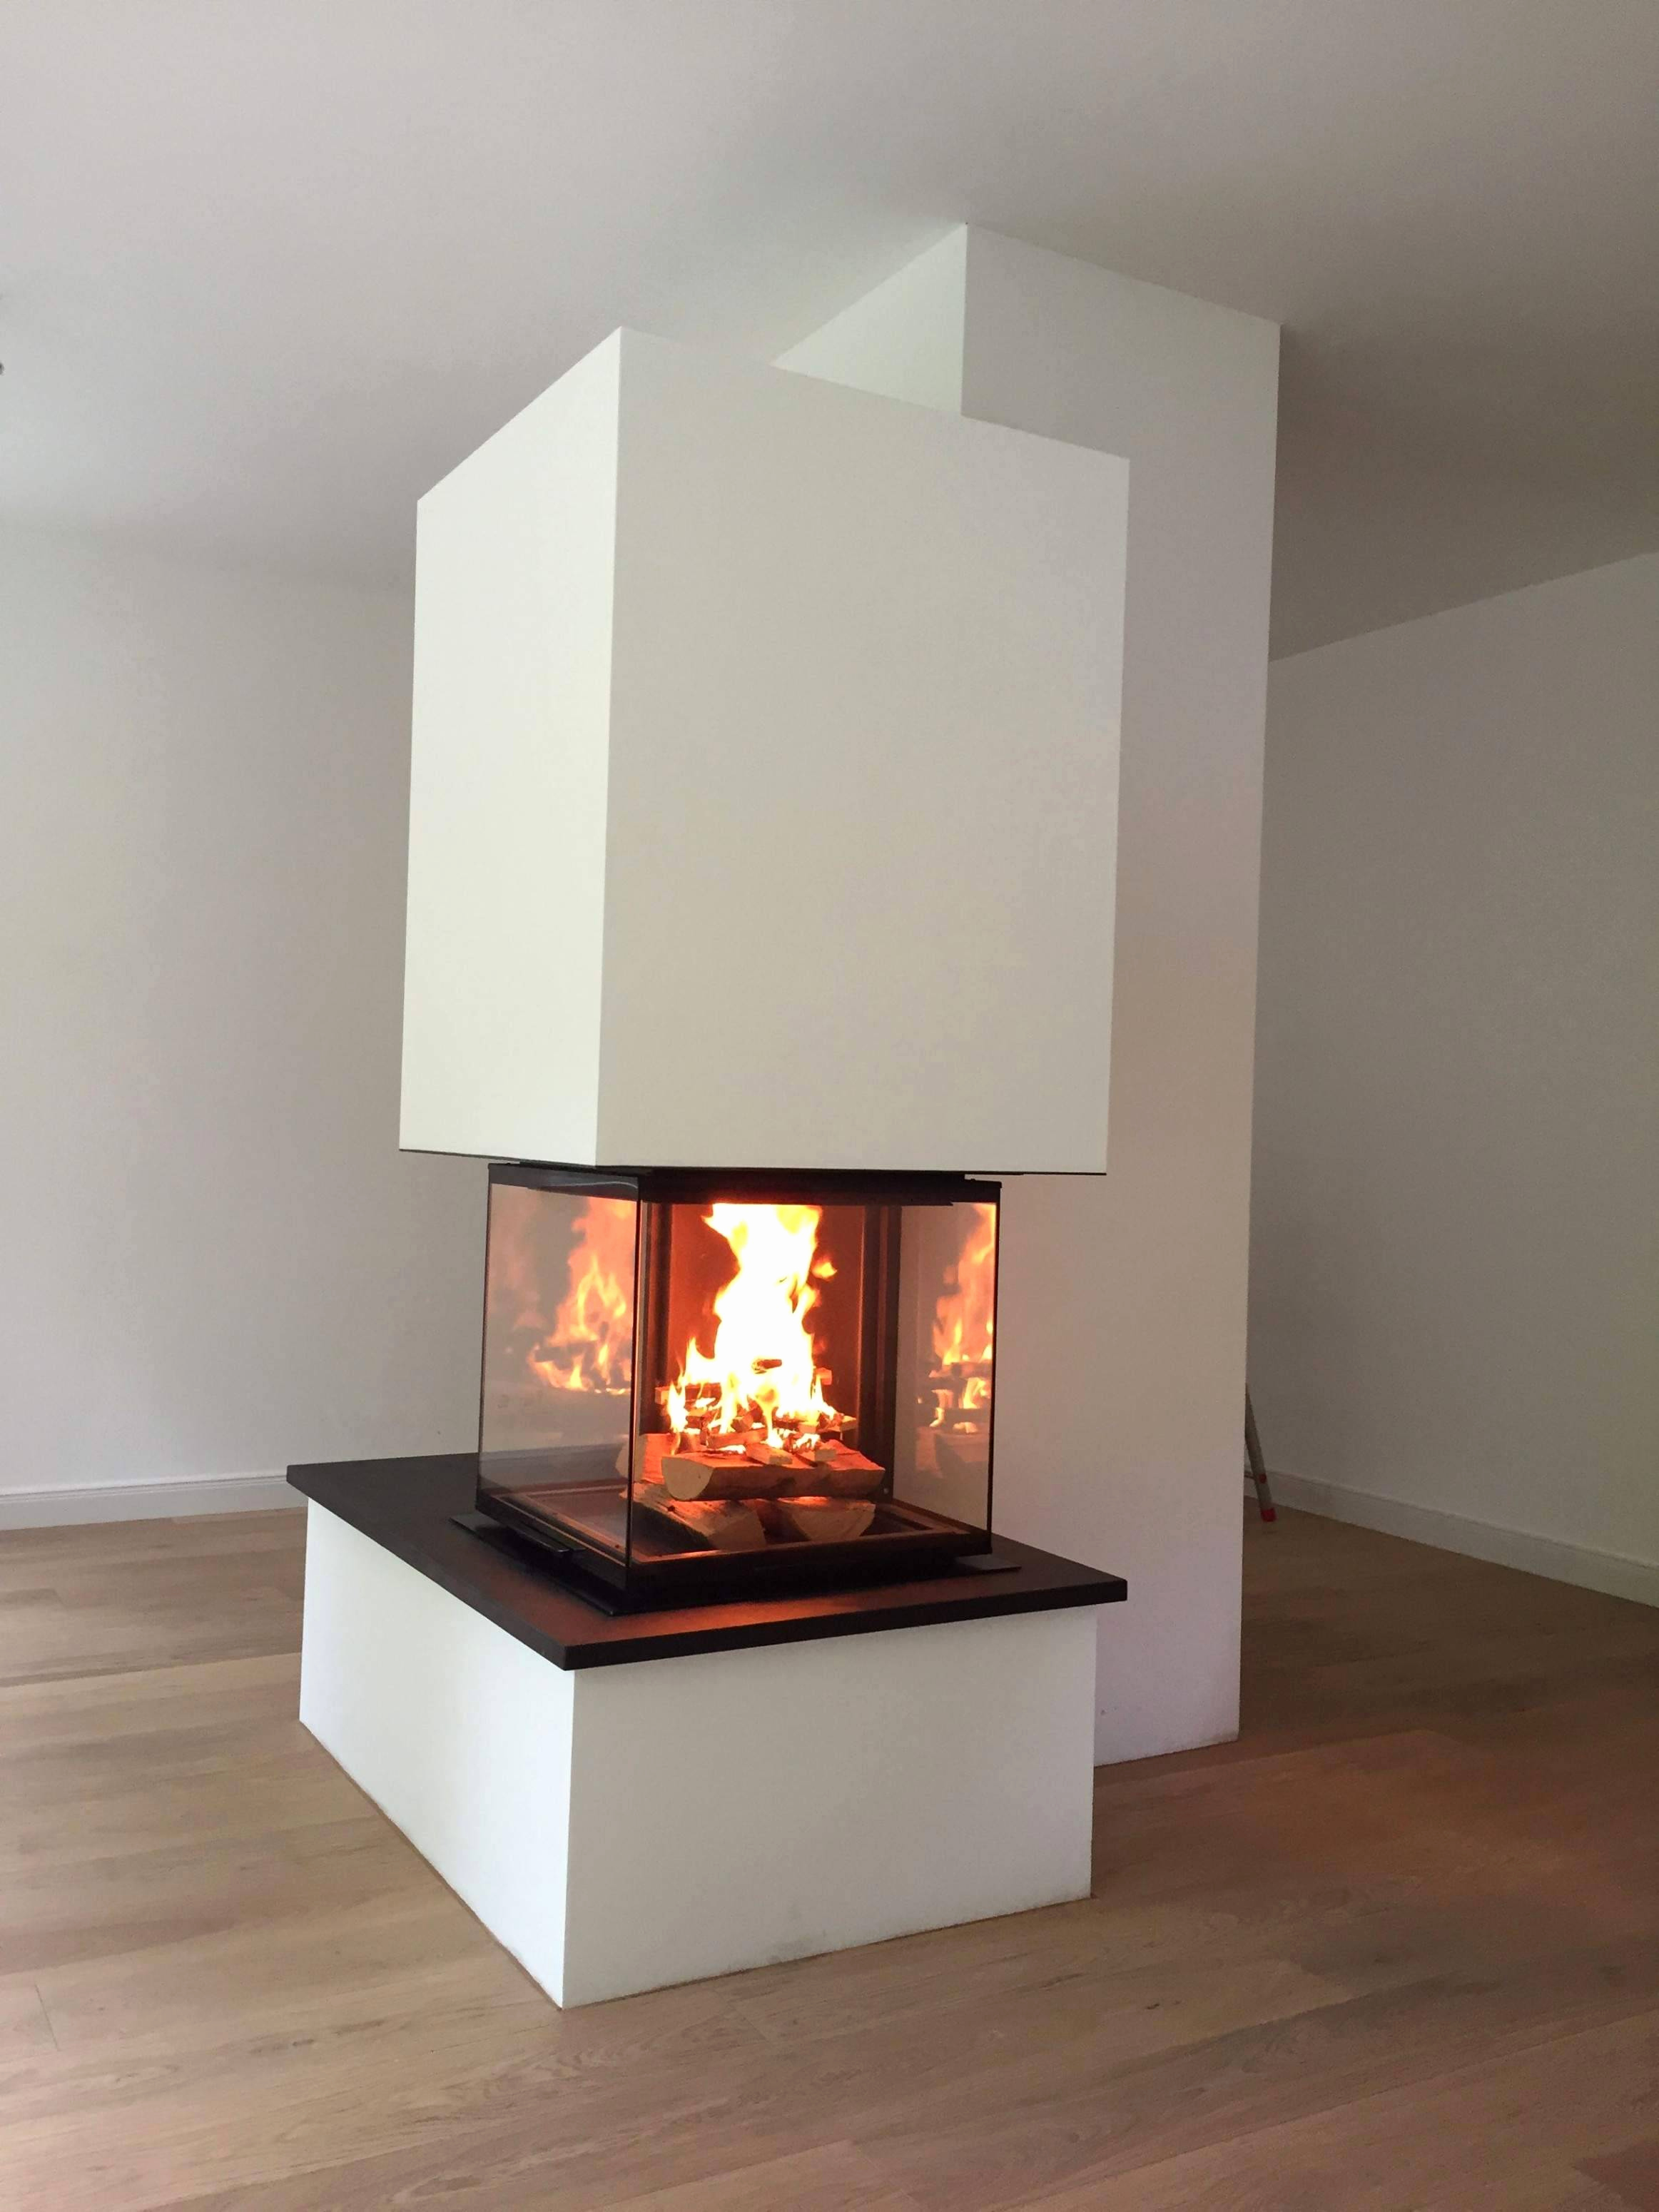 Decorative Gas Fireplace Beautiful Speicherkaminofen Das Beste Von Kaminofen Mit Speicher